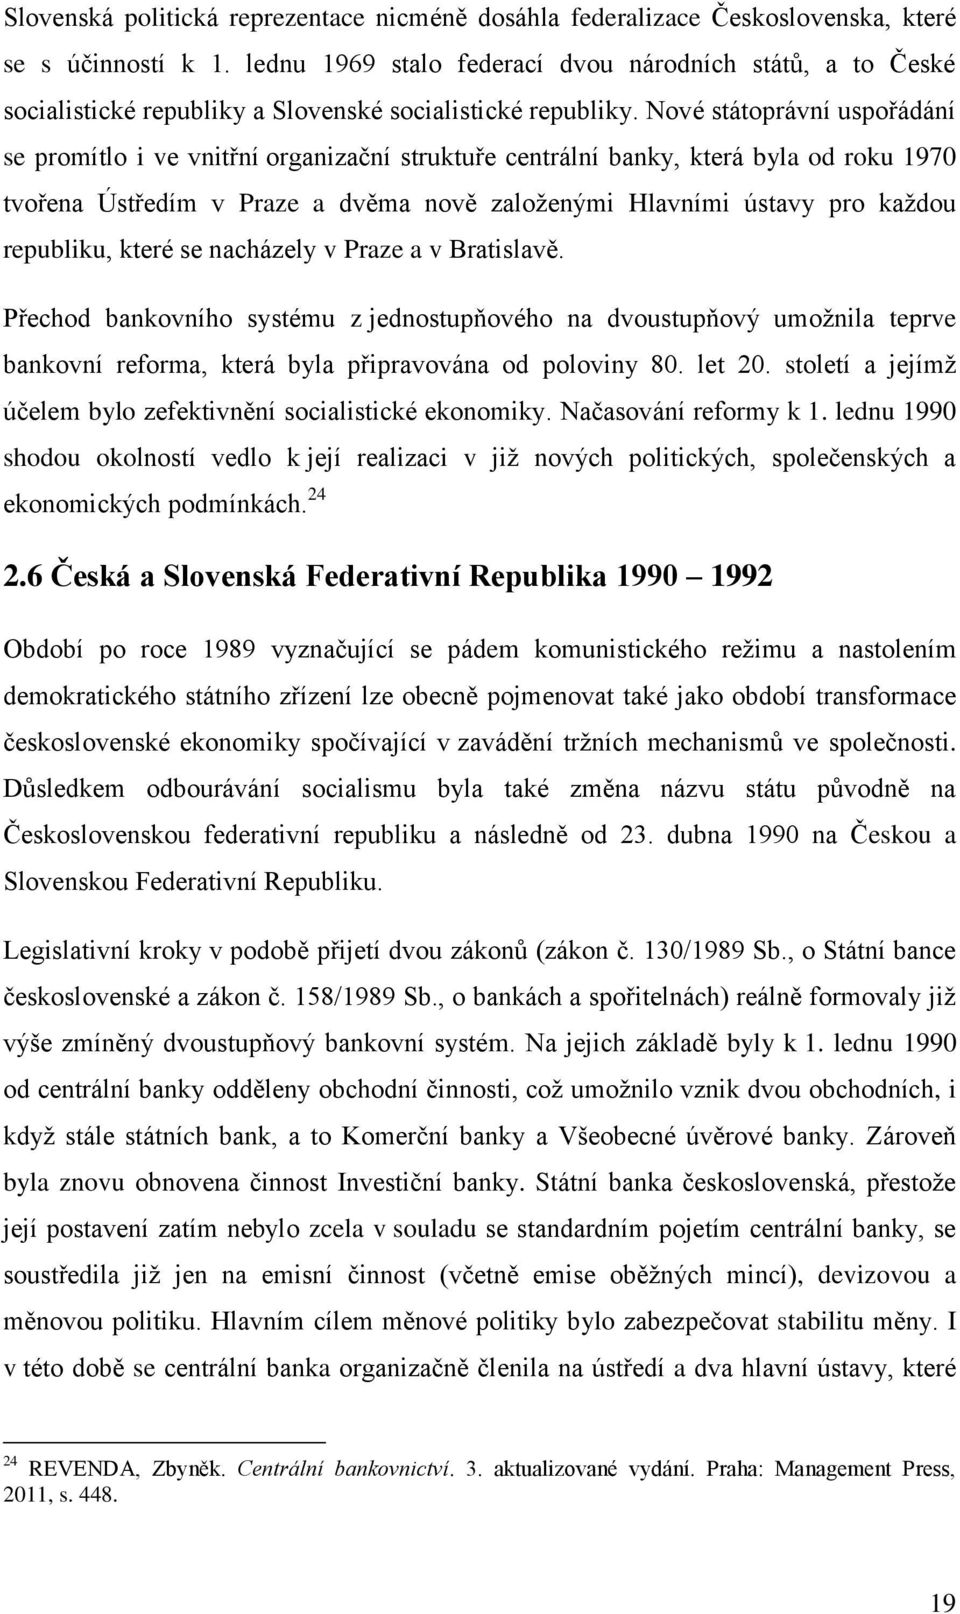 Nové státoprávní uspořádání se promítlo i ve vnitřní organizační struktuře centrální banky, která byla od roku 1970 tvořena Ústředím v Praze a dvěma nově zaloţenými Hlavními ústavy pro kaţdou